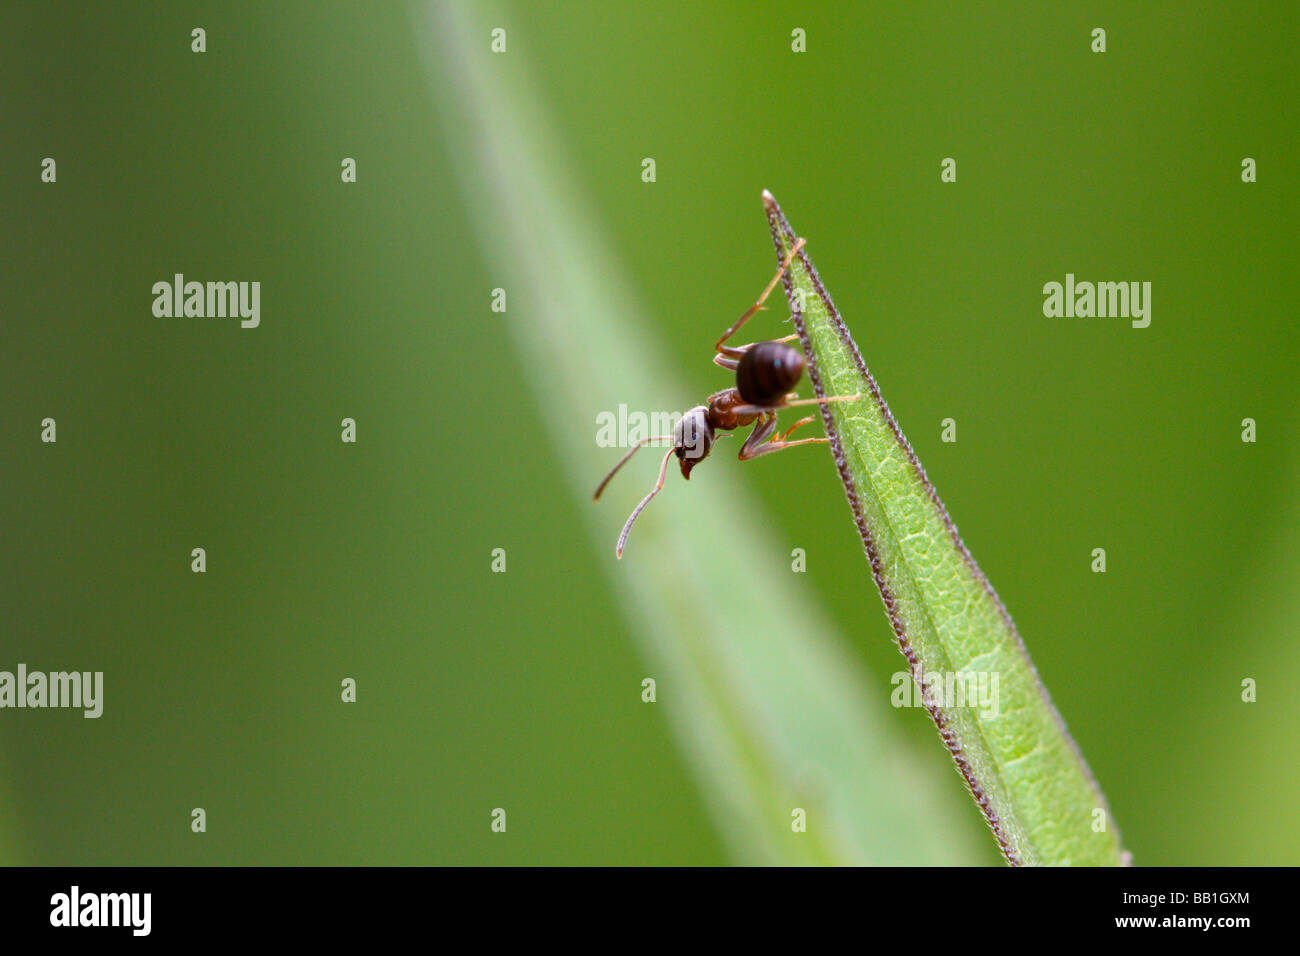 Lasius niger, la hormiga negra de jardín, sobre una hoja Foto de stock